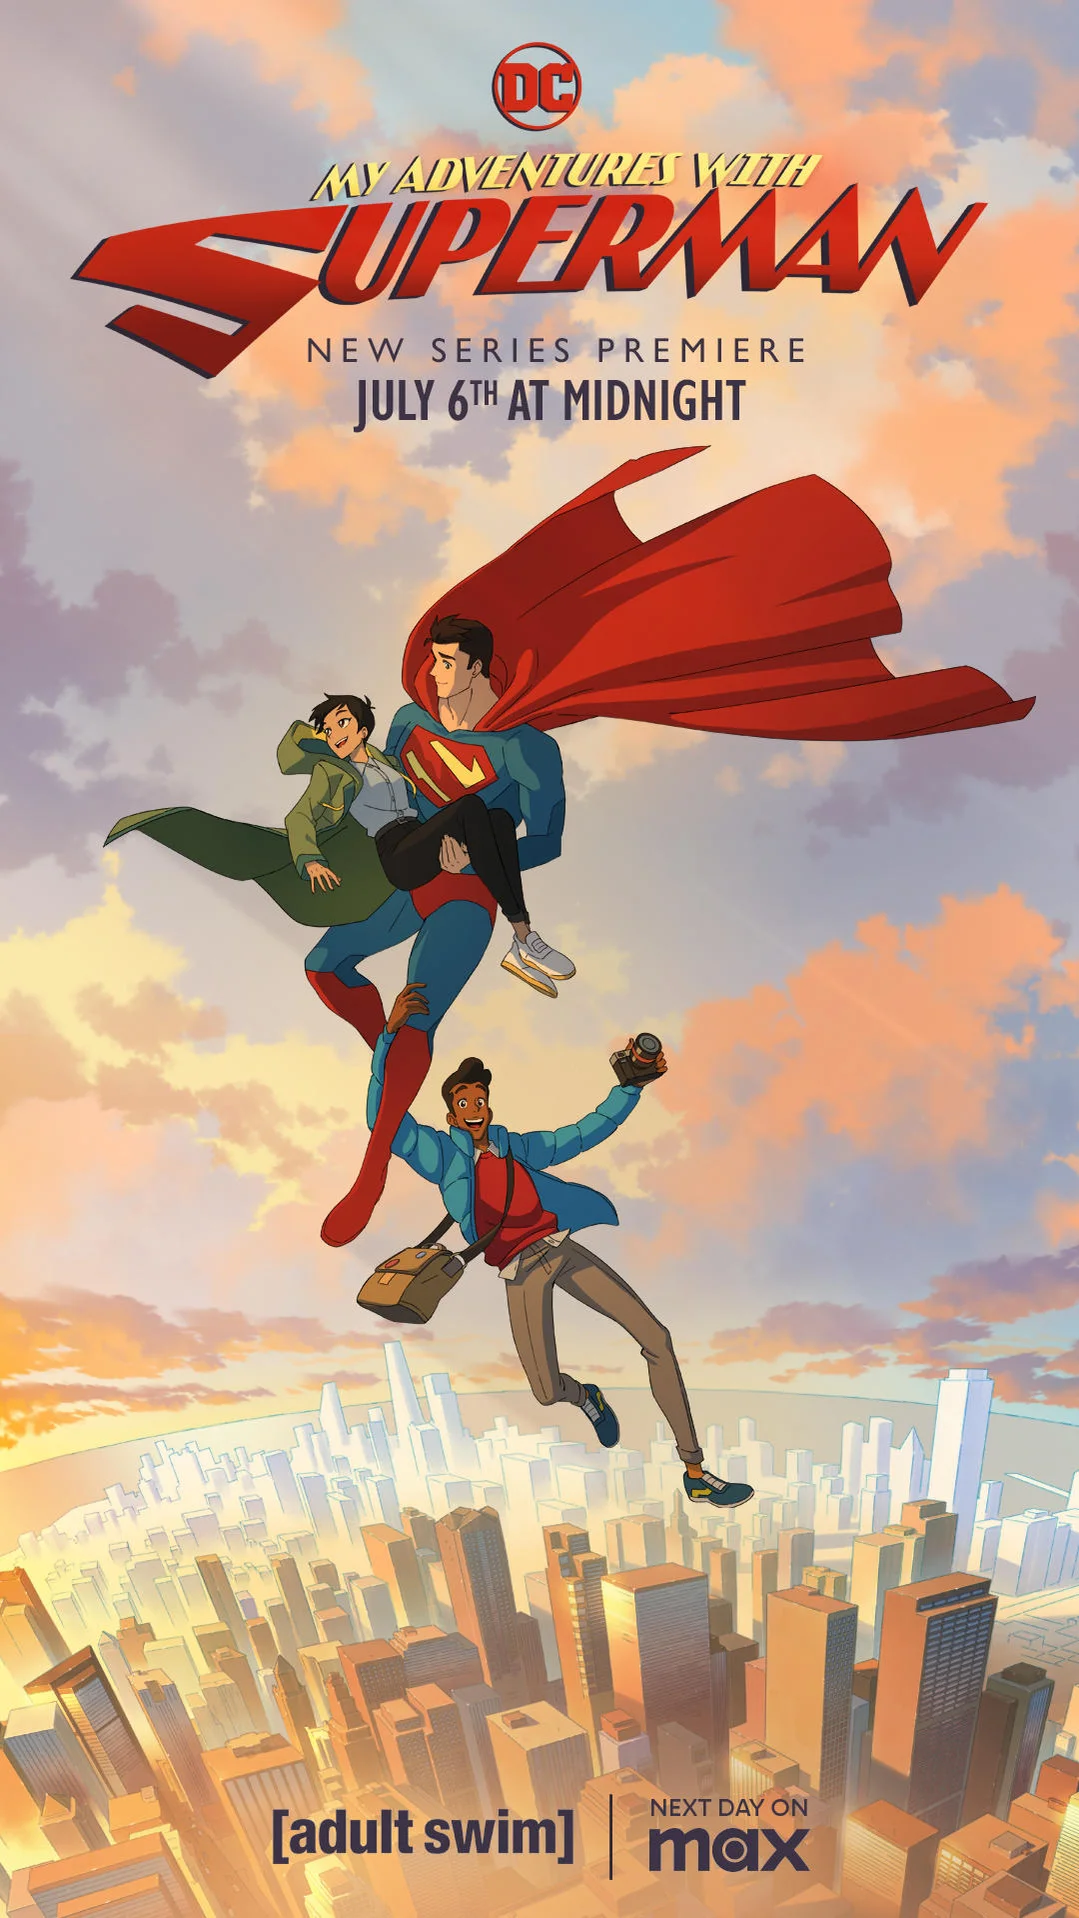 Superman anime version by MarceloSilvaArt on DeviantArt-demhanvico.com.vn